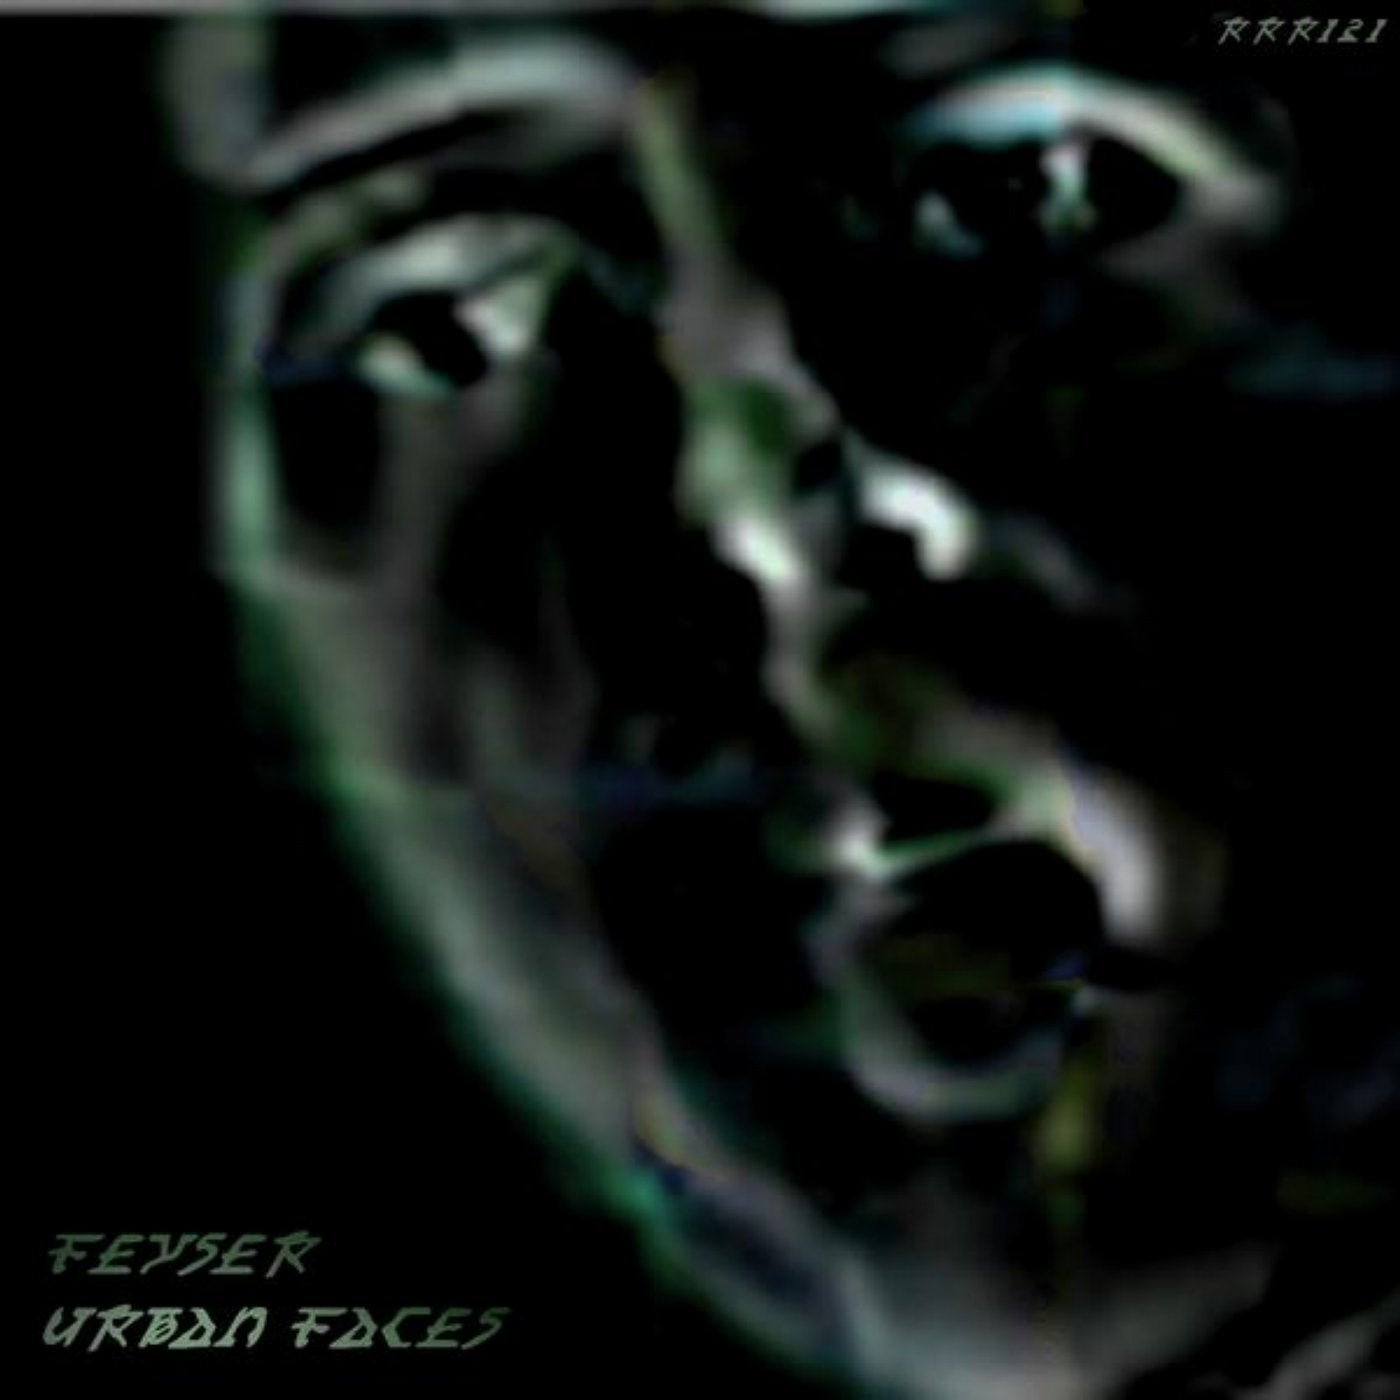 Urban Faces